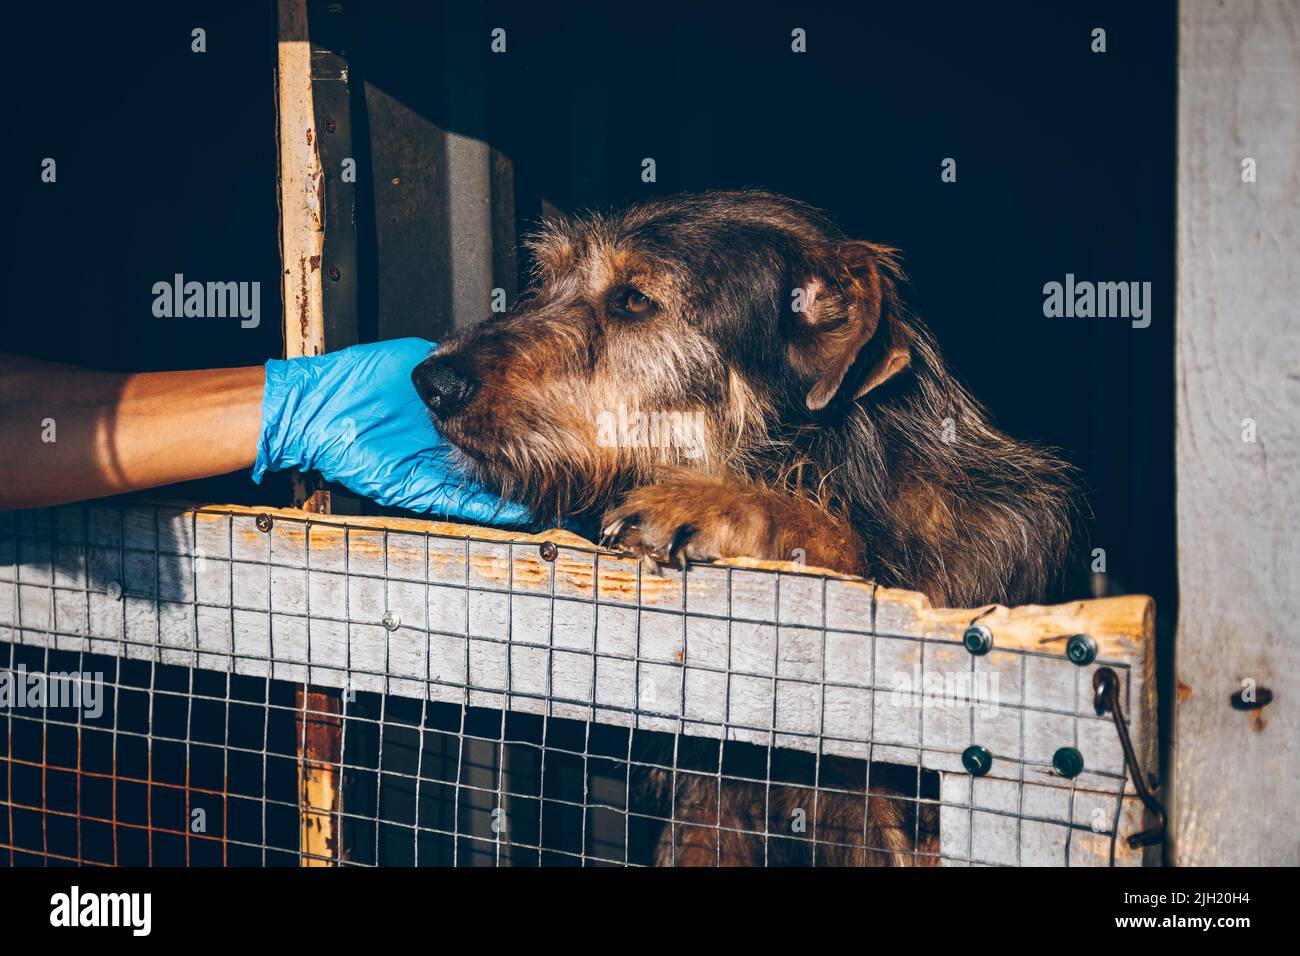 Tierarzt Hände streicheln alten obdachlosen Hund in Tierheim. Freiwillige helfen ukrainischen Haustieren. Tierhilfe. Uschhorod, Ukraine Stockfoto